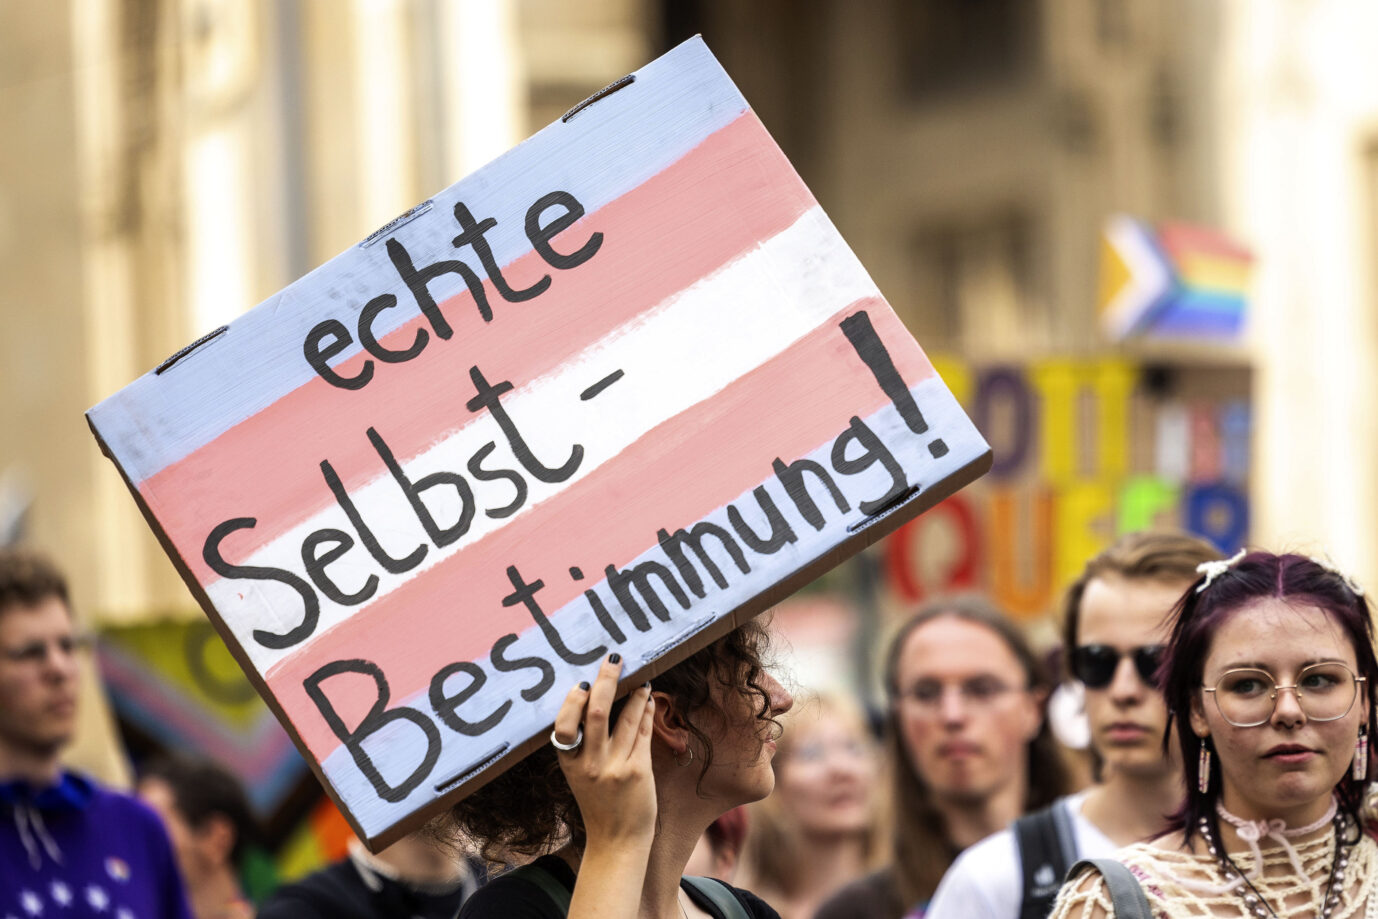 In Nordrhein-Westfalen wurde ein biologischer Mann, der sich als Transgender identifiziert, vom Männer- in den Frauenvollzug verlegt. Außerdem wartet der Transgender-Gefangene auf eine geschlechtsangleichende Operation.